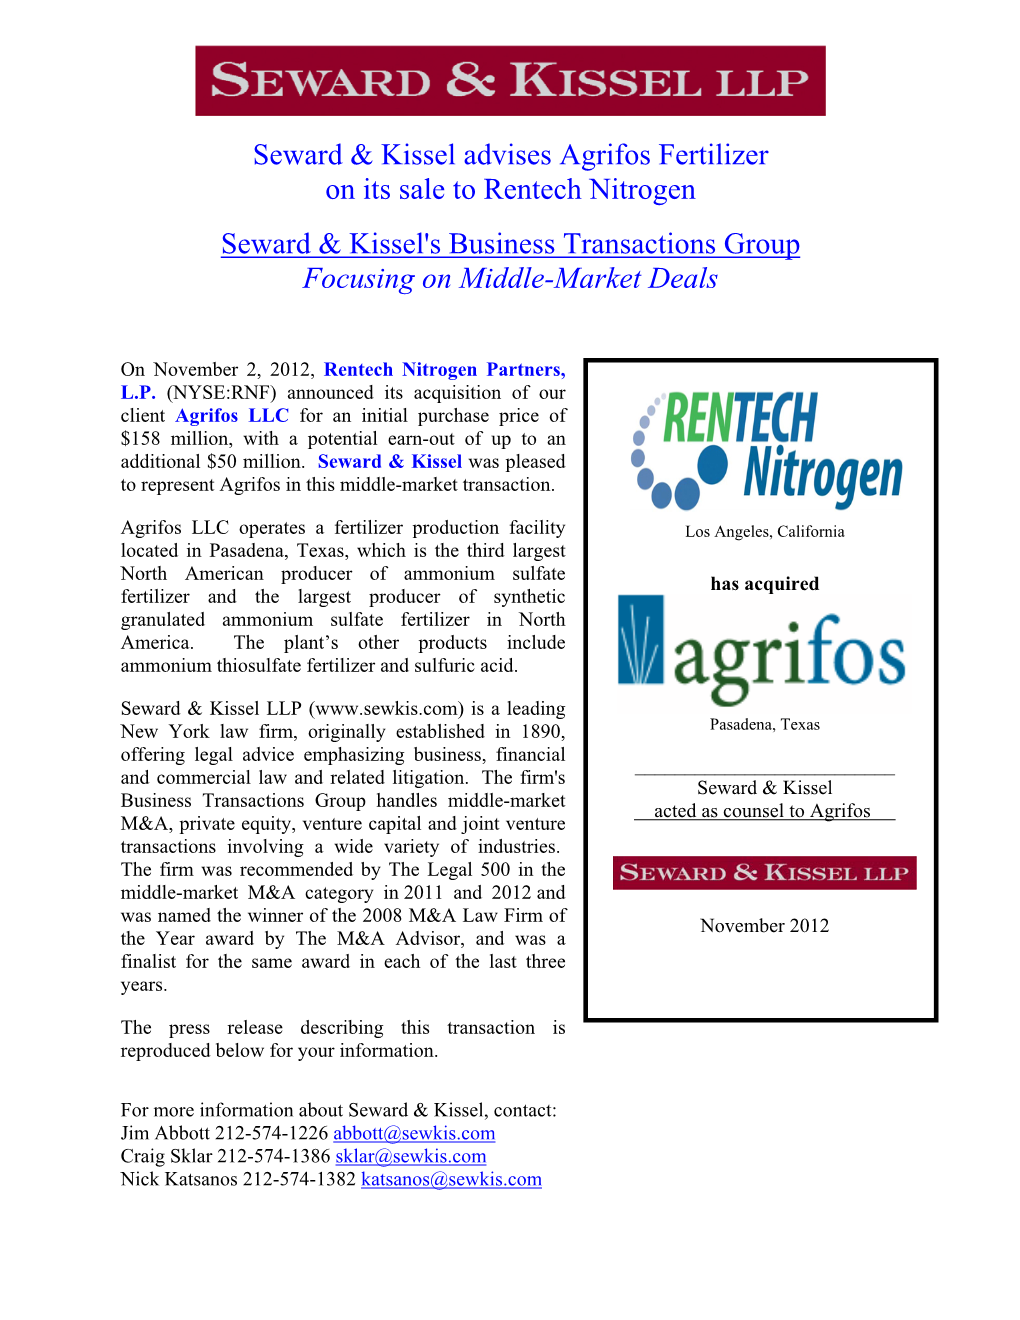 Seward & Kissel Advises Agrifos Fertilizer on Its Sale to Rentech